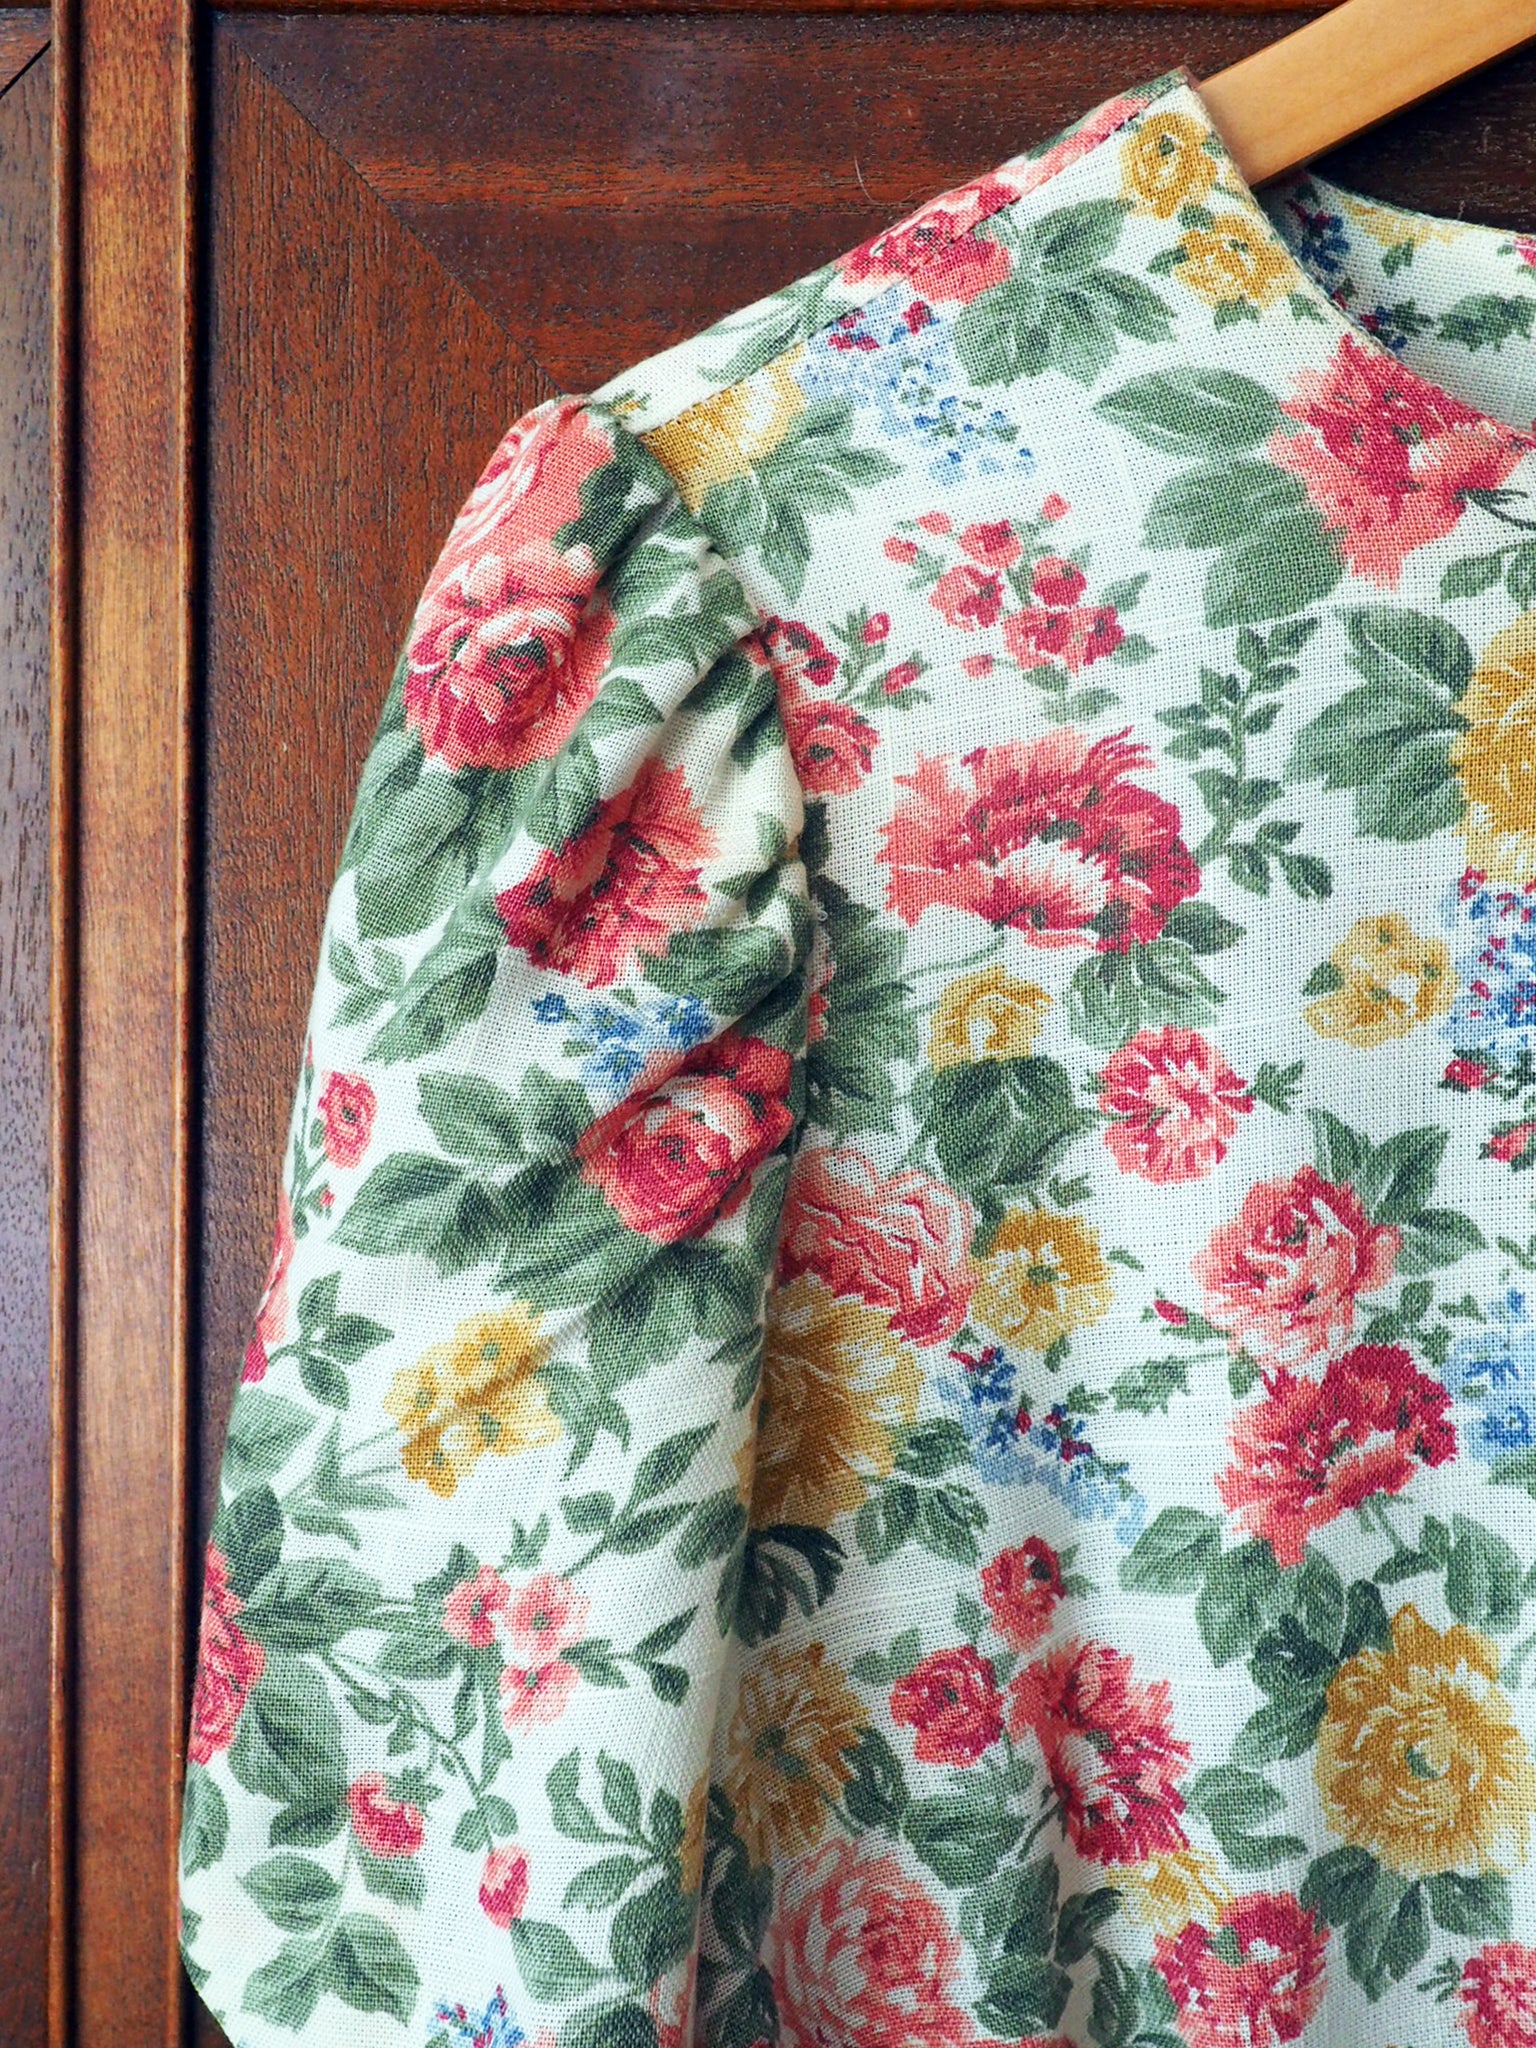 Vintage Rose Floral Short-Sleeve Midi Handmade